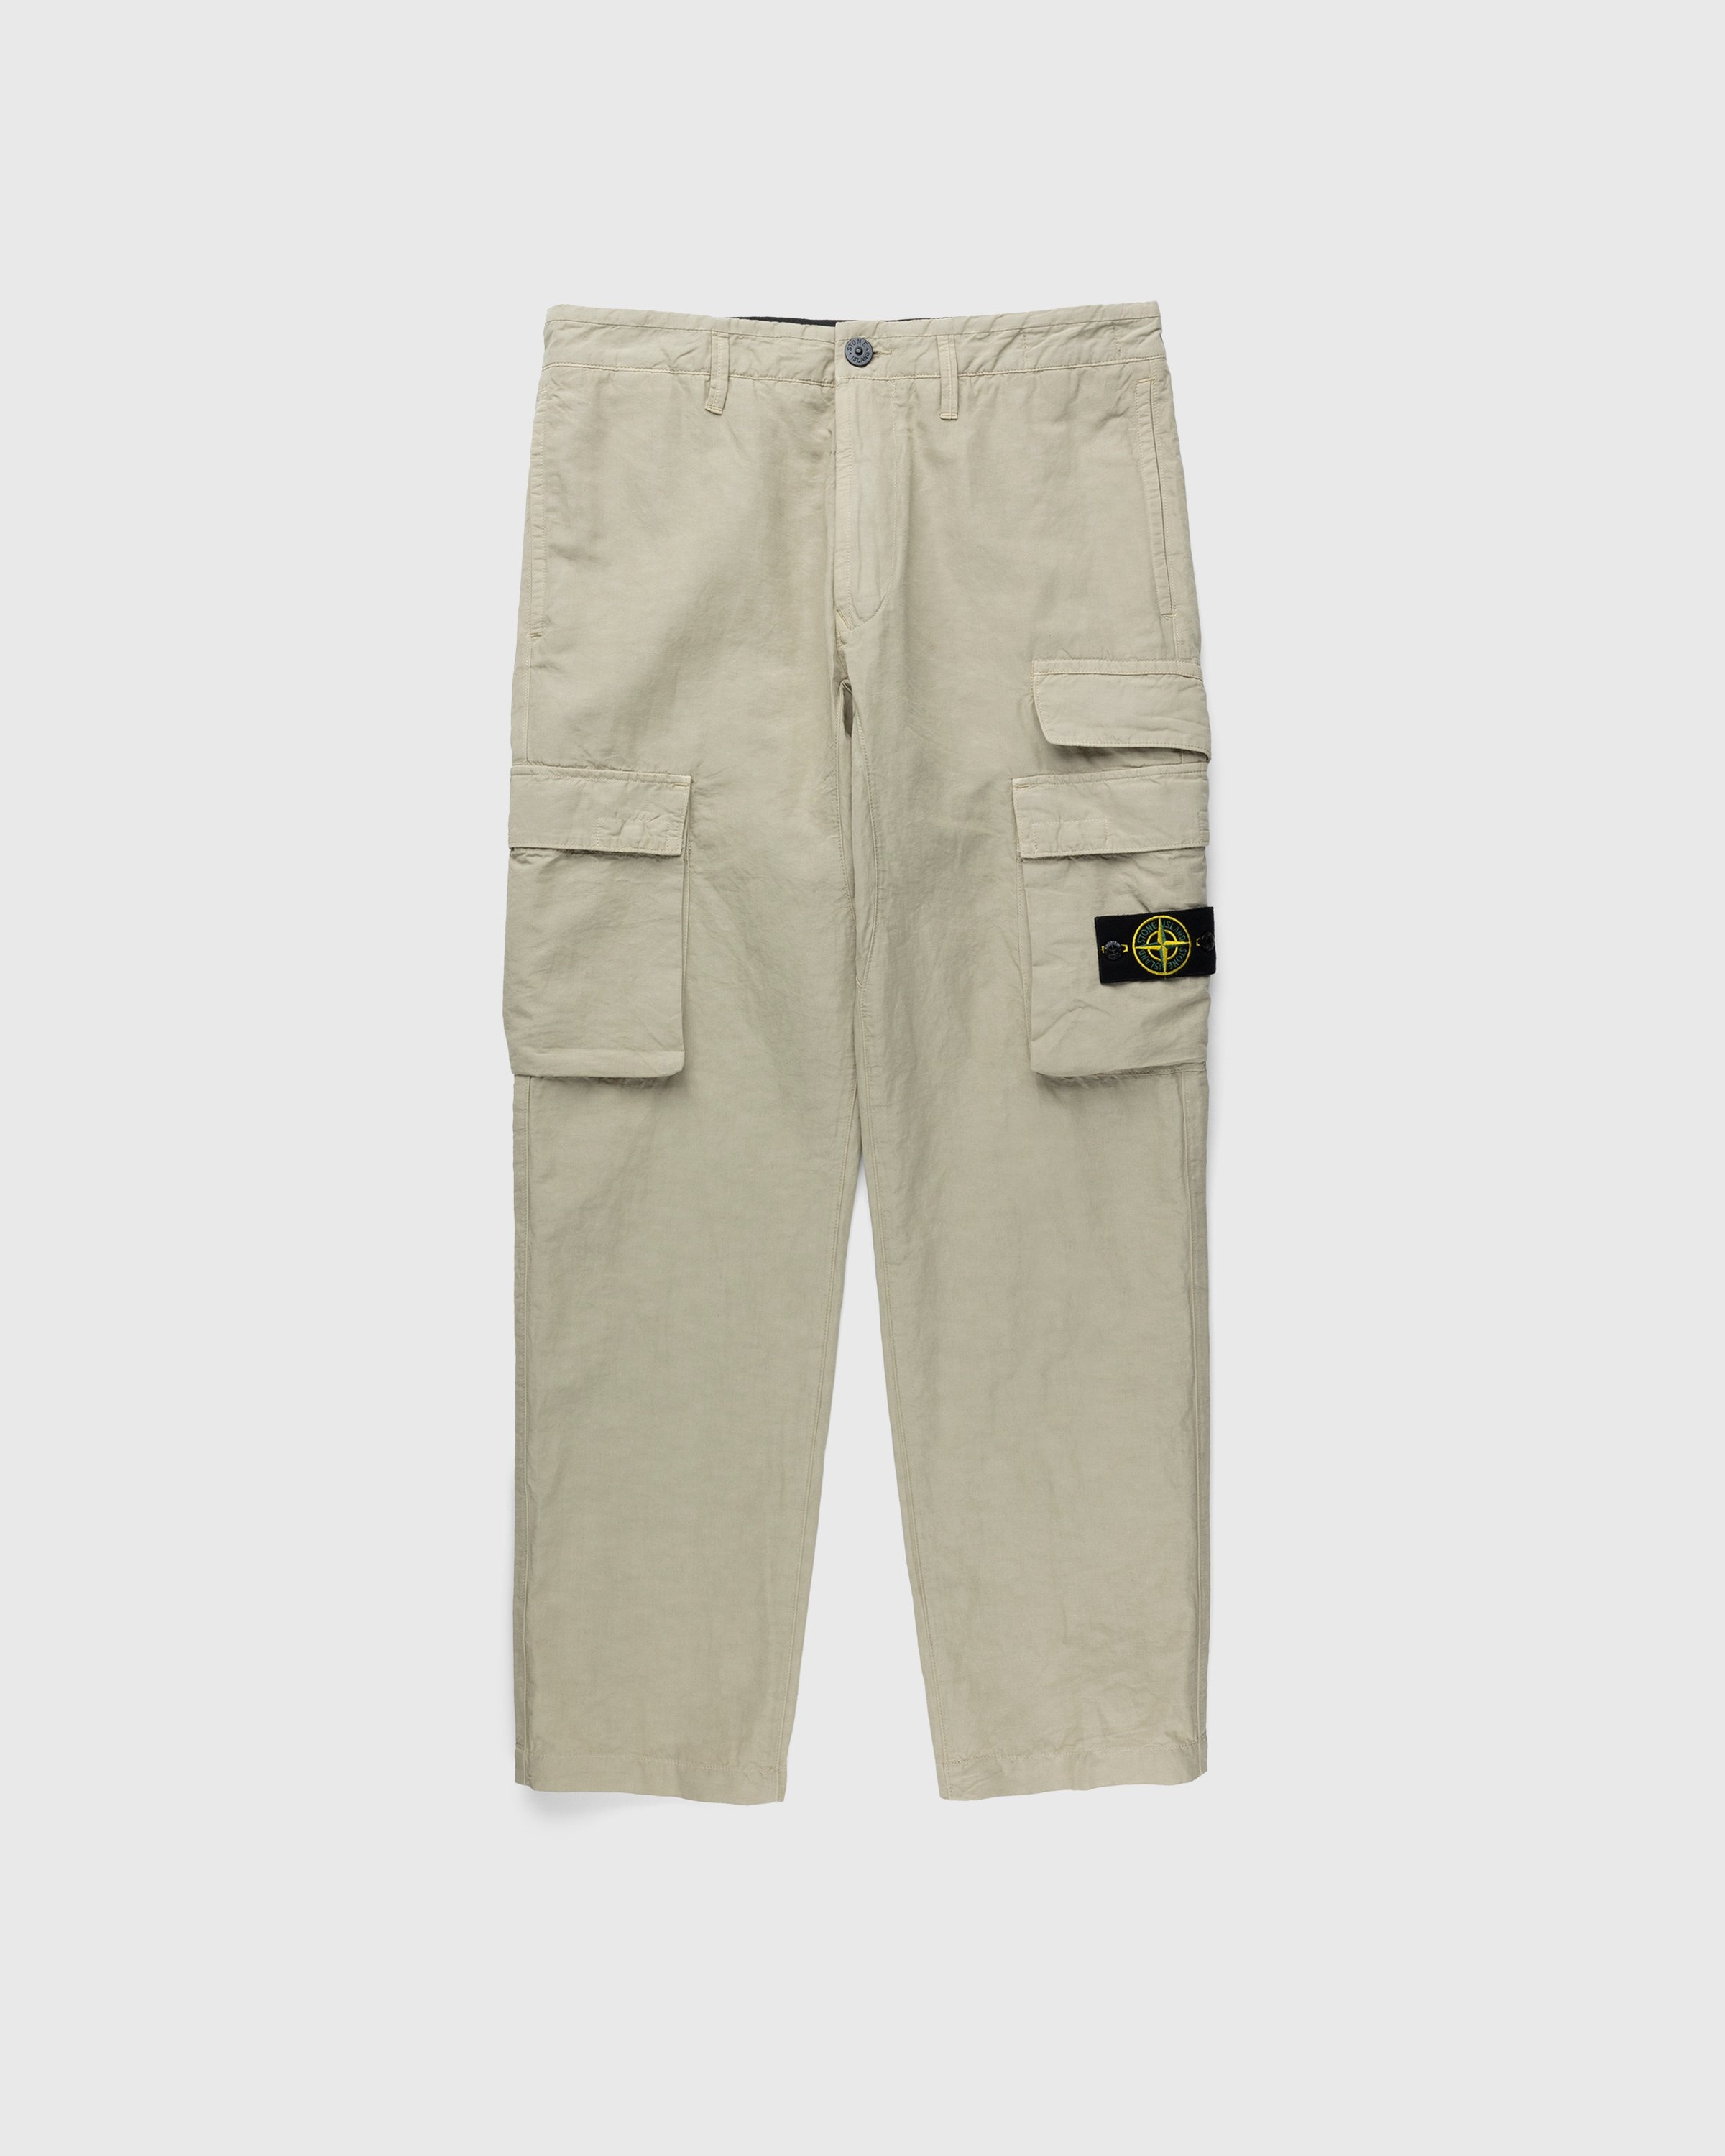 Stone Island – 31706 Garment-Dyed Cargo Pants Khaki - Cargo Pants - Beige - Image 1